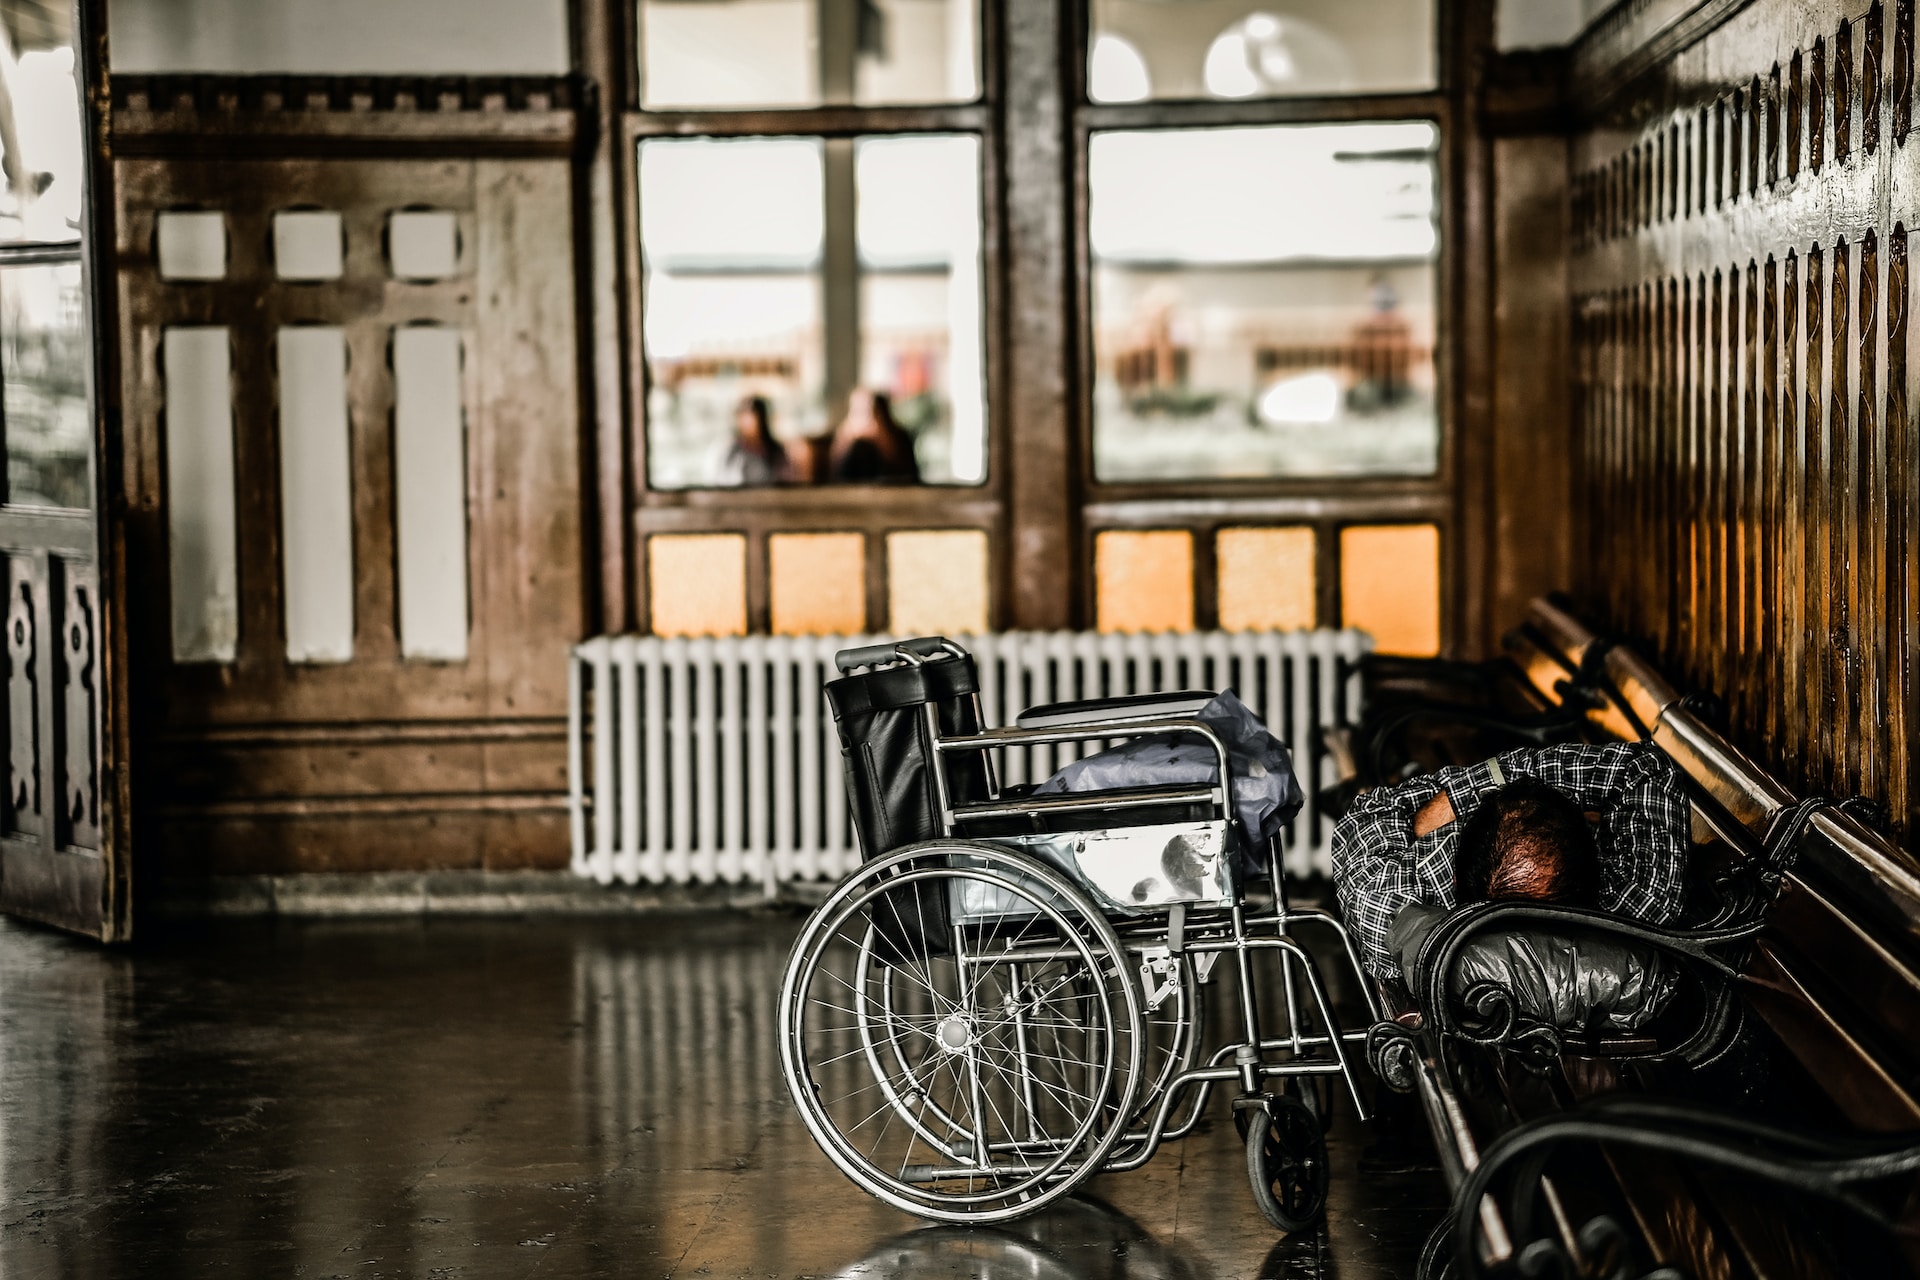 장애인들의 휠체어 이용이나 보조기구 사용을 고려하여 설계된 넓은 공간&#44; 장애인용 변기&#44; 비상 호출 장치&#44; 낮은 장애물 등이 포함됩니다.